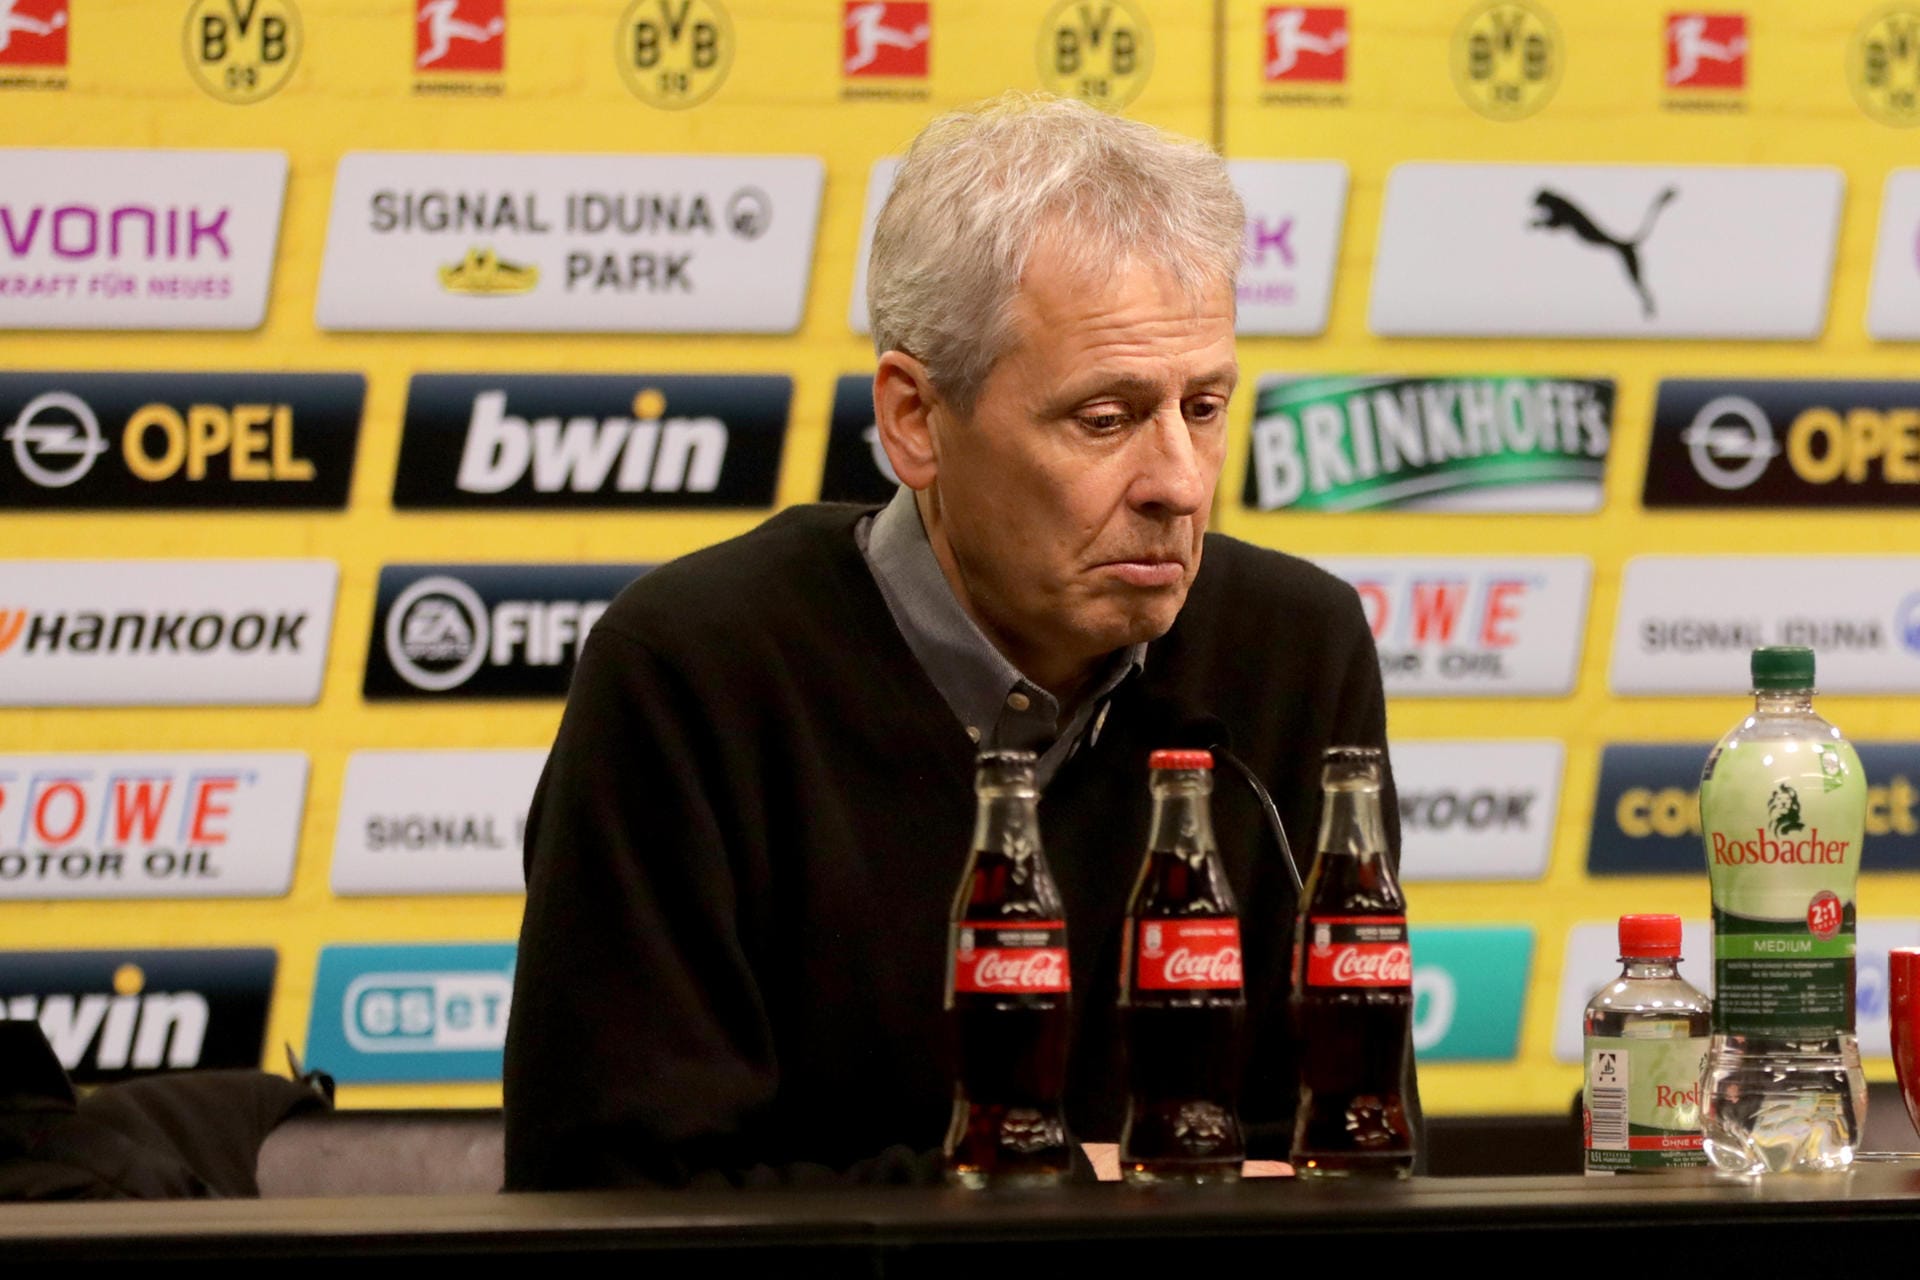 "Die Welt" (Deutschland): "So ist Lucien Favre nicht mehr zu halten: Dortmund lag zur Halbzeit gegen Tabellenschlusslicht Paderborn mit 0:3 zurück. Am Ende erkämpfte sich Favres Mannschaft zwar noch ein 3:3 – doch für den Trainer könnte es der Anfang vom Ende gewesen sein."